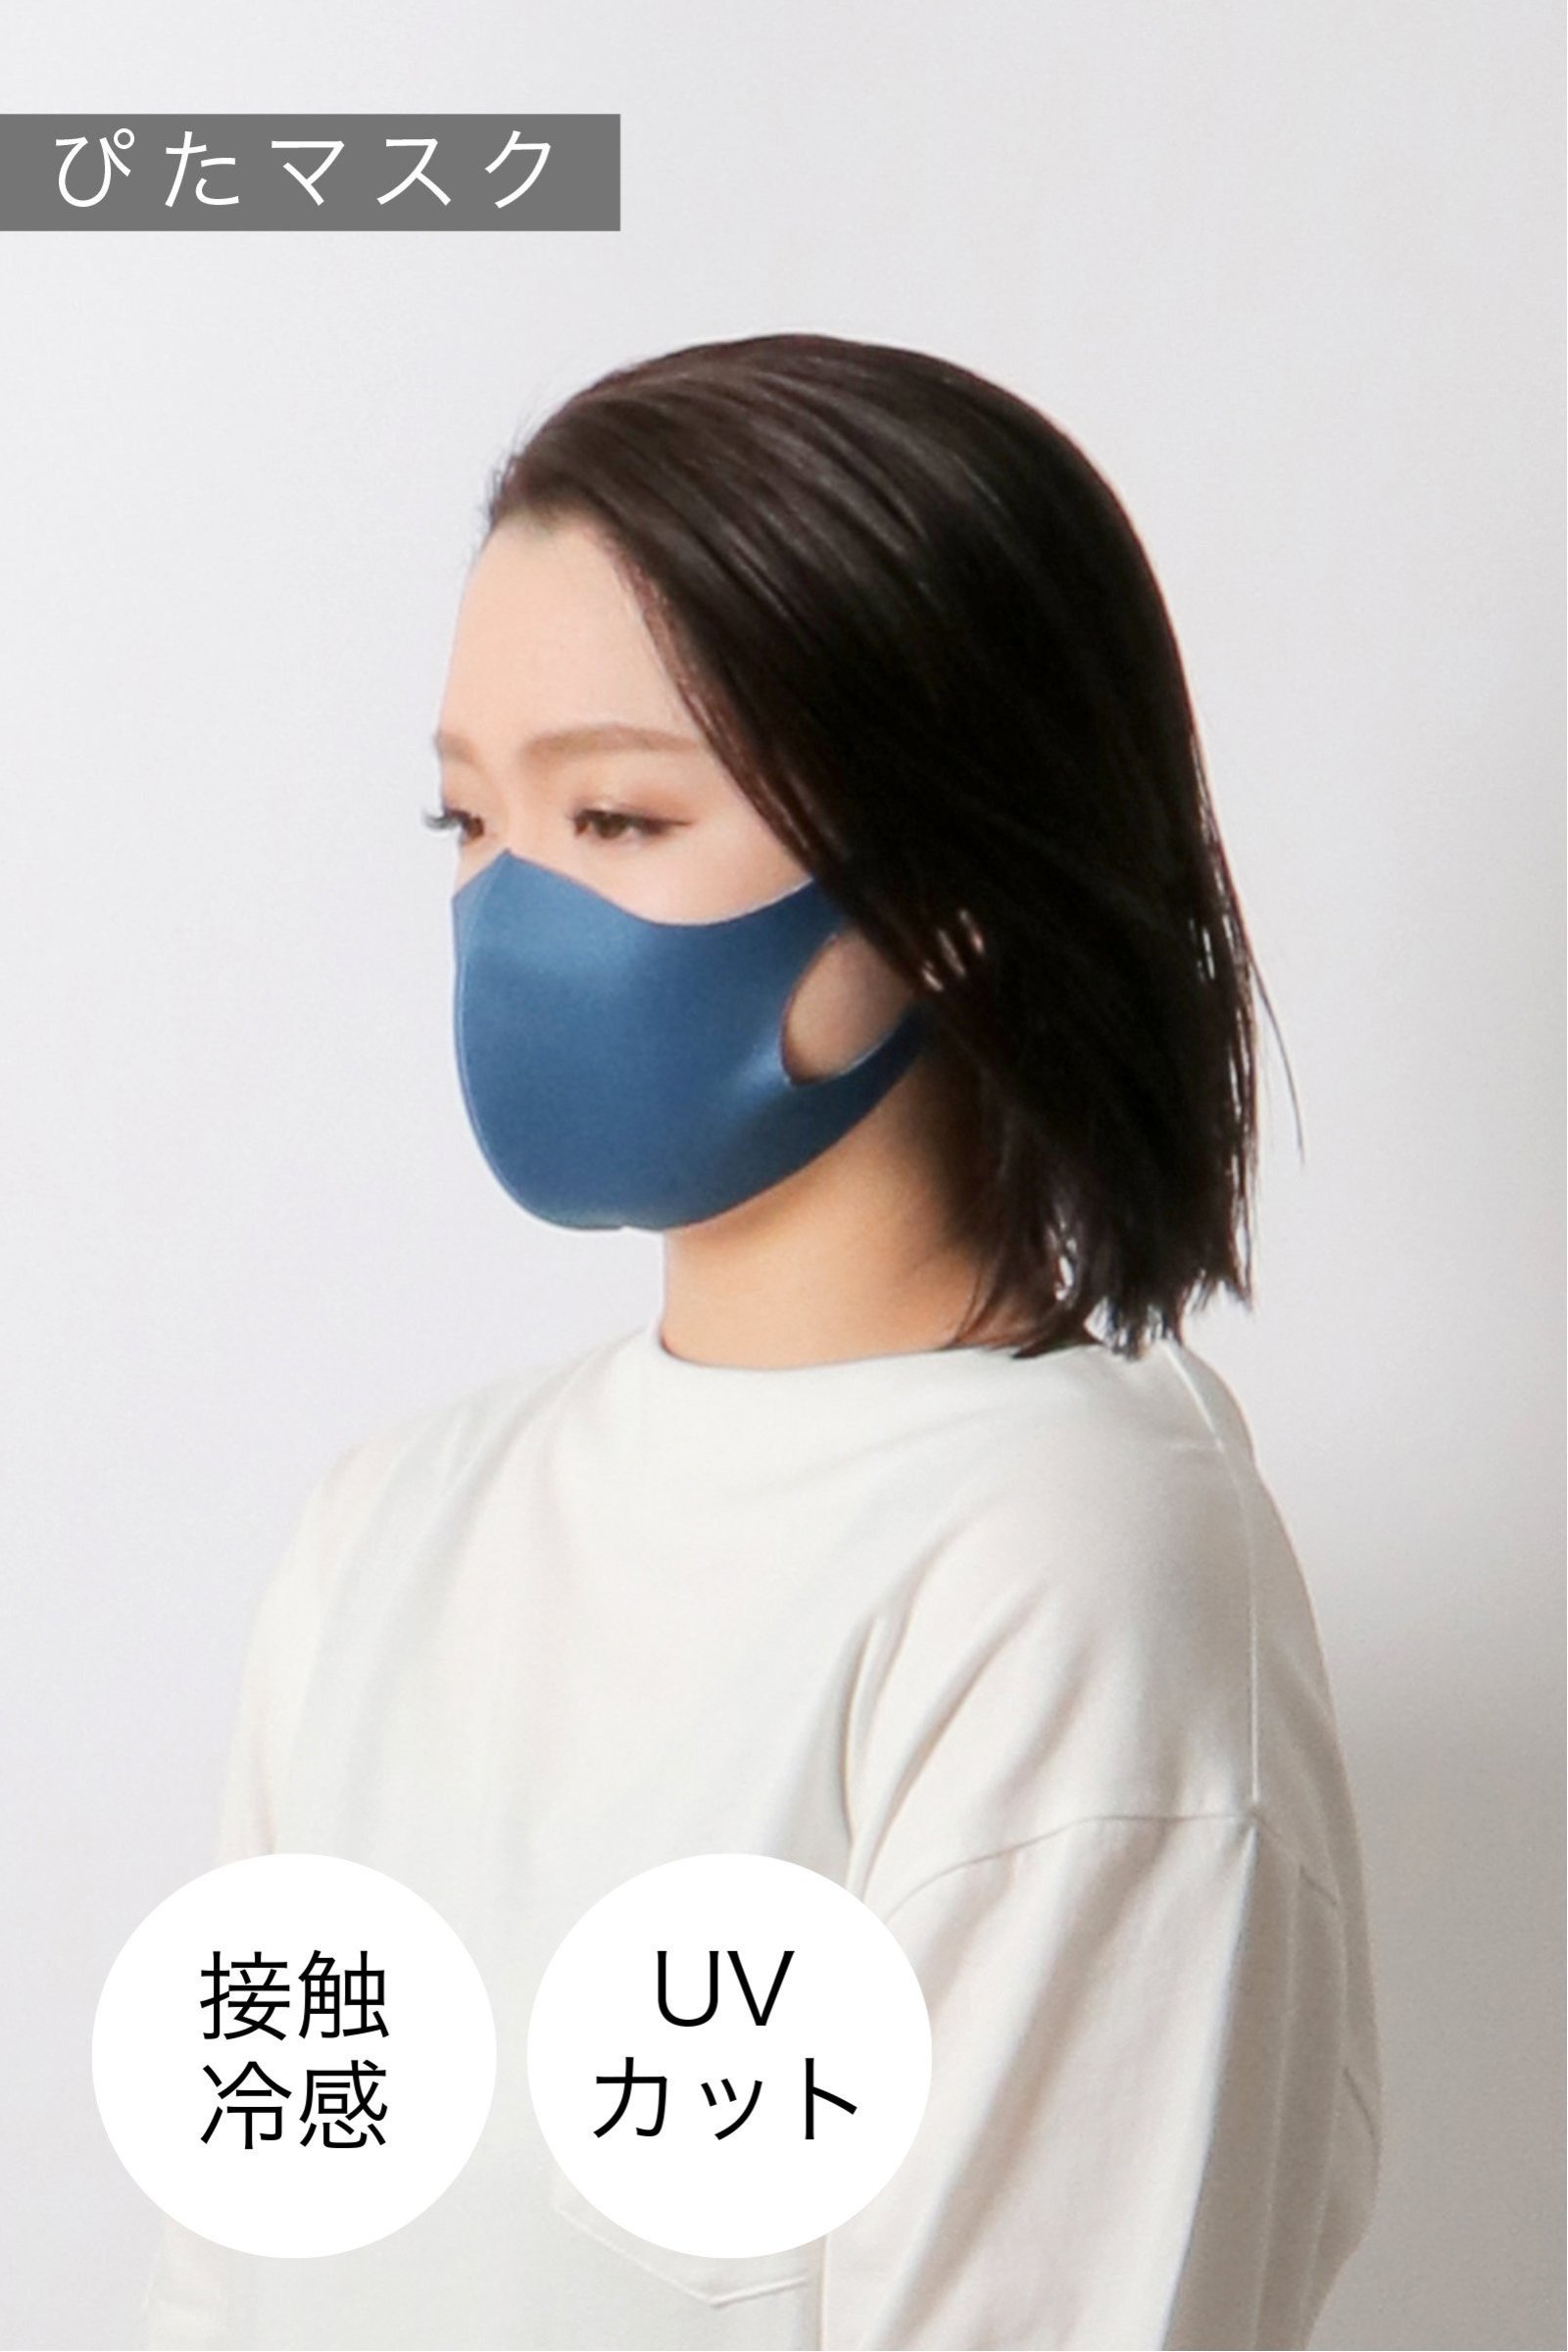 【おとな用】 ぴたマスク(3枚セット)  ネイビー